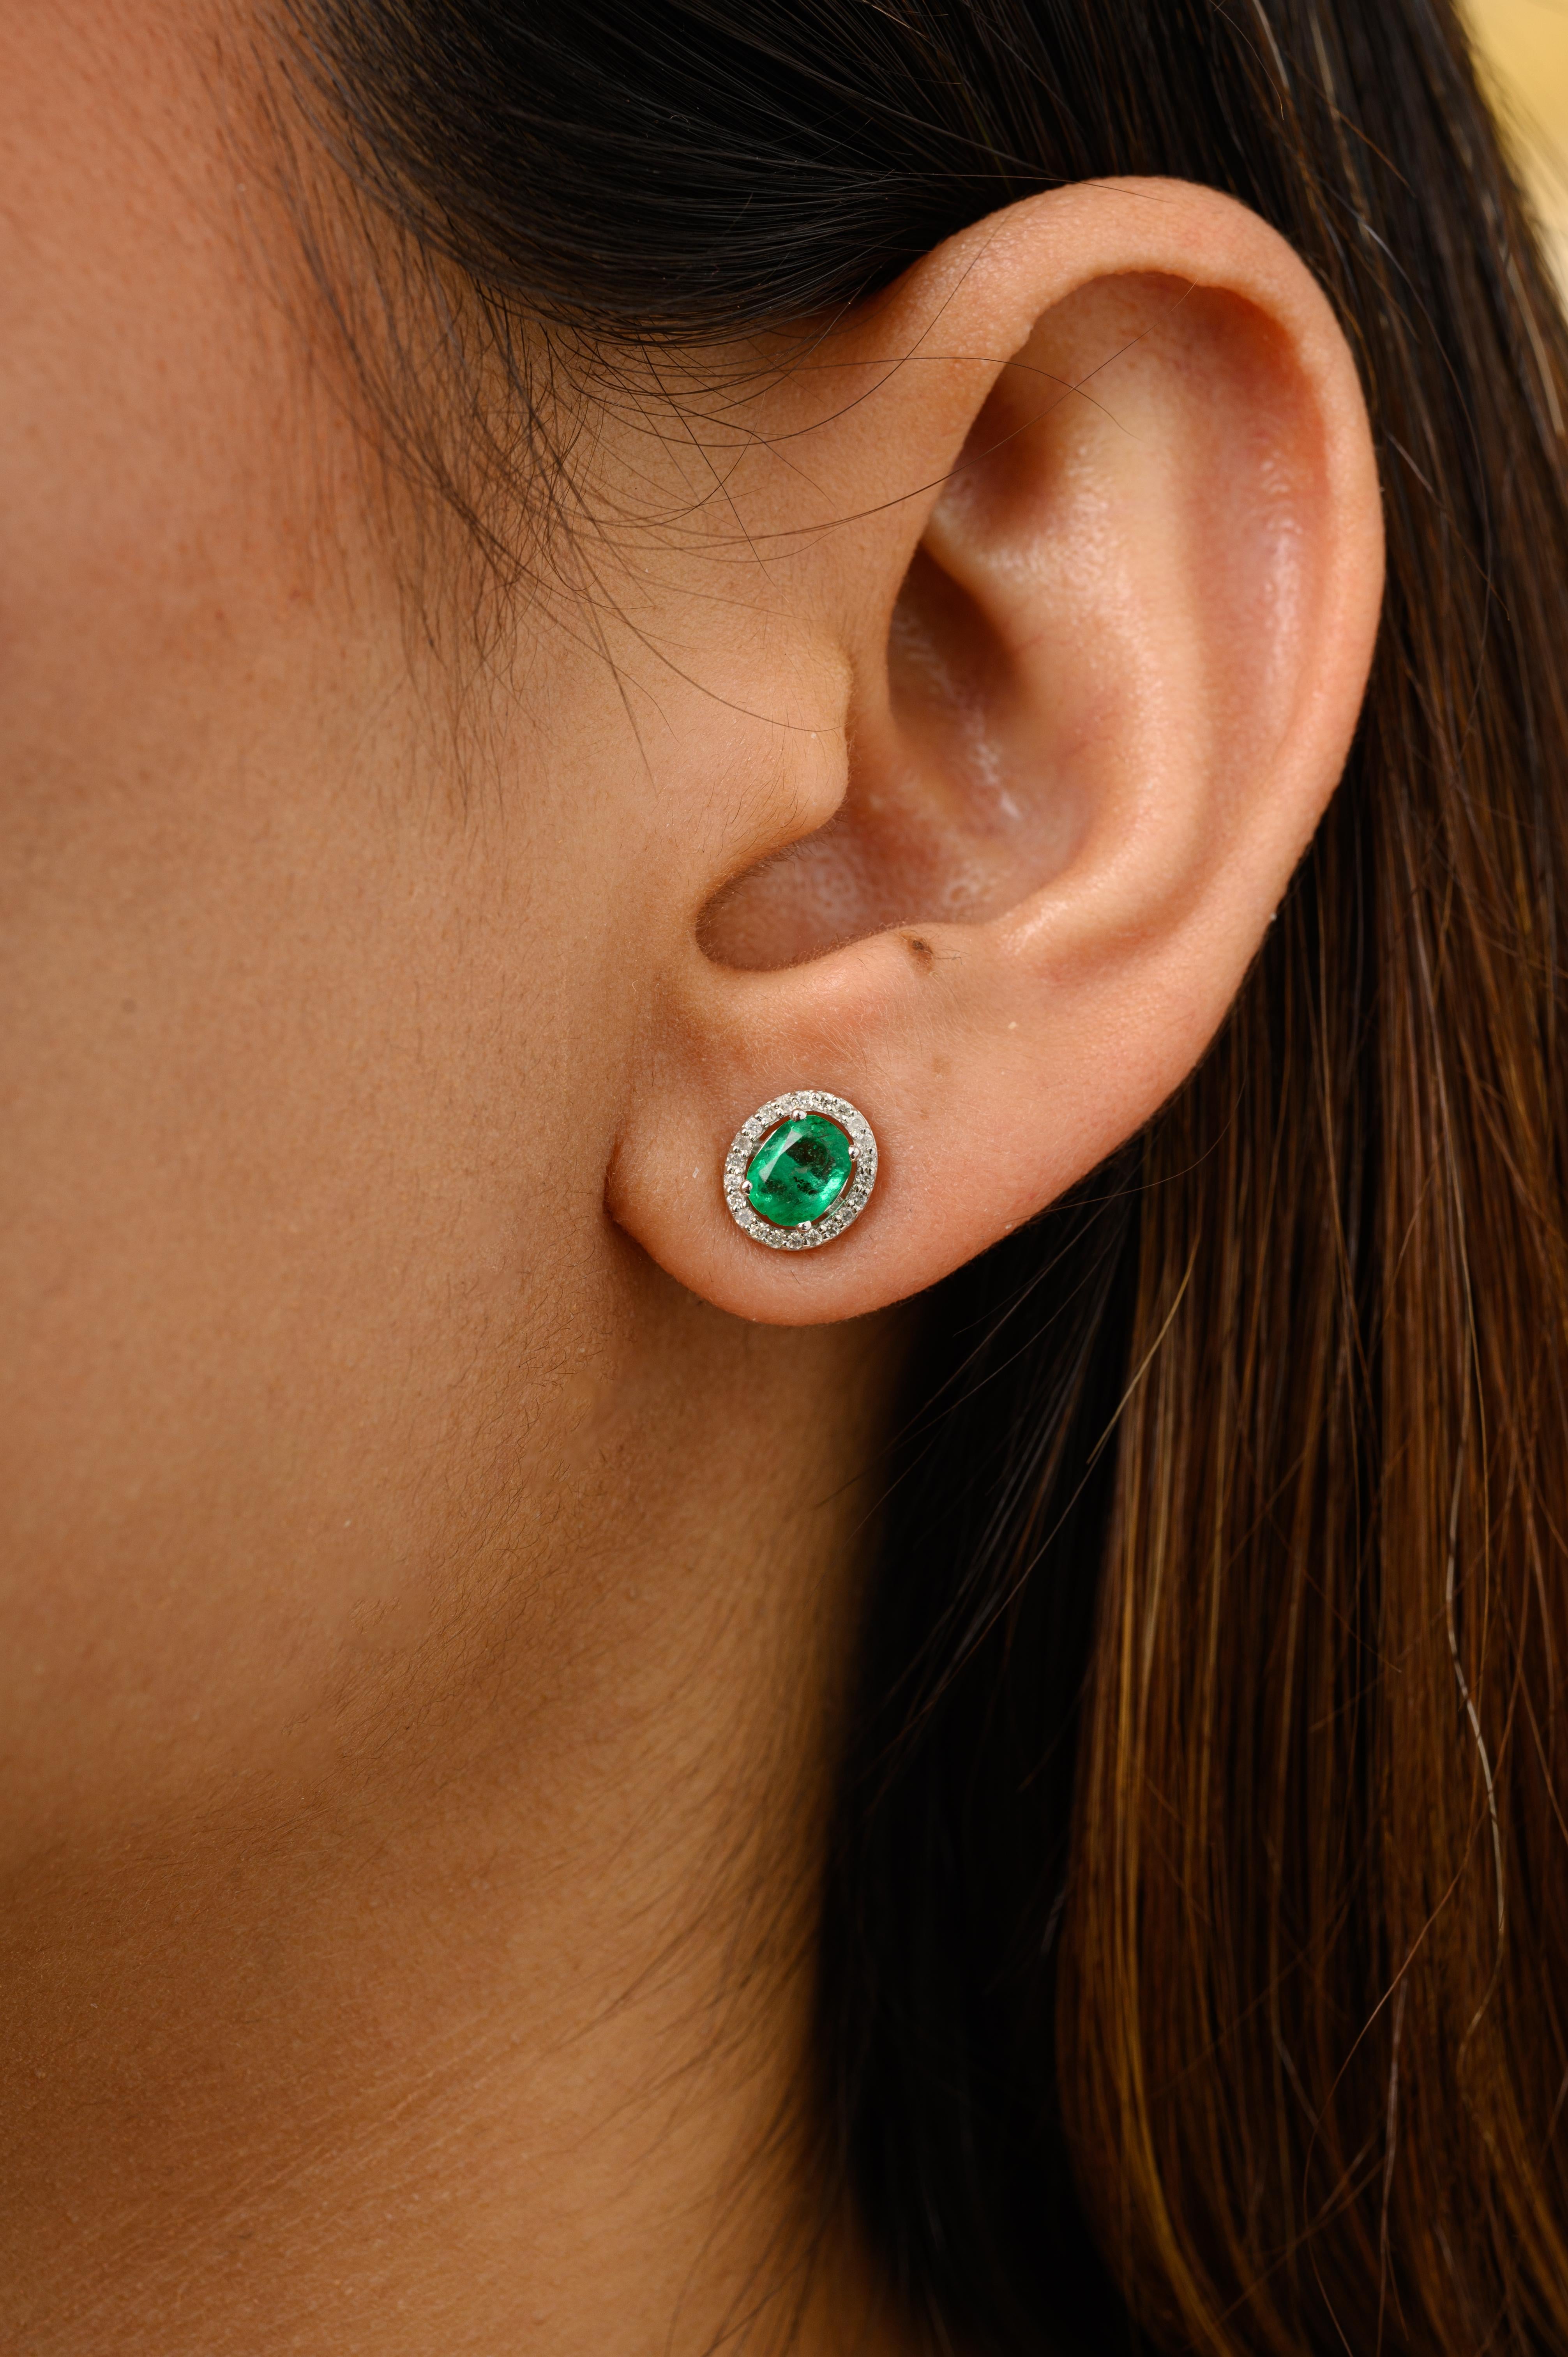 Natürlicher Smaragd Diamant Halo Oval Ohrstecker Geschenk für Mama in 14K Gold, um ein Statement mit Ihrem Look zu machen. Sie brauchen Ohrstecker, um mit Ihrem Look ein Statement zu setzen. Diese Ohrringe mit Smaragd im Ovalschliff und Diamanten im